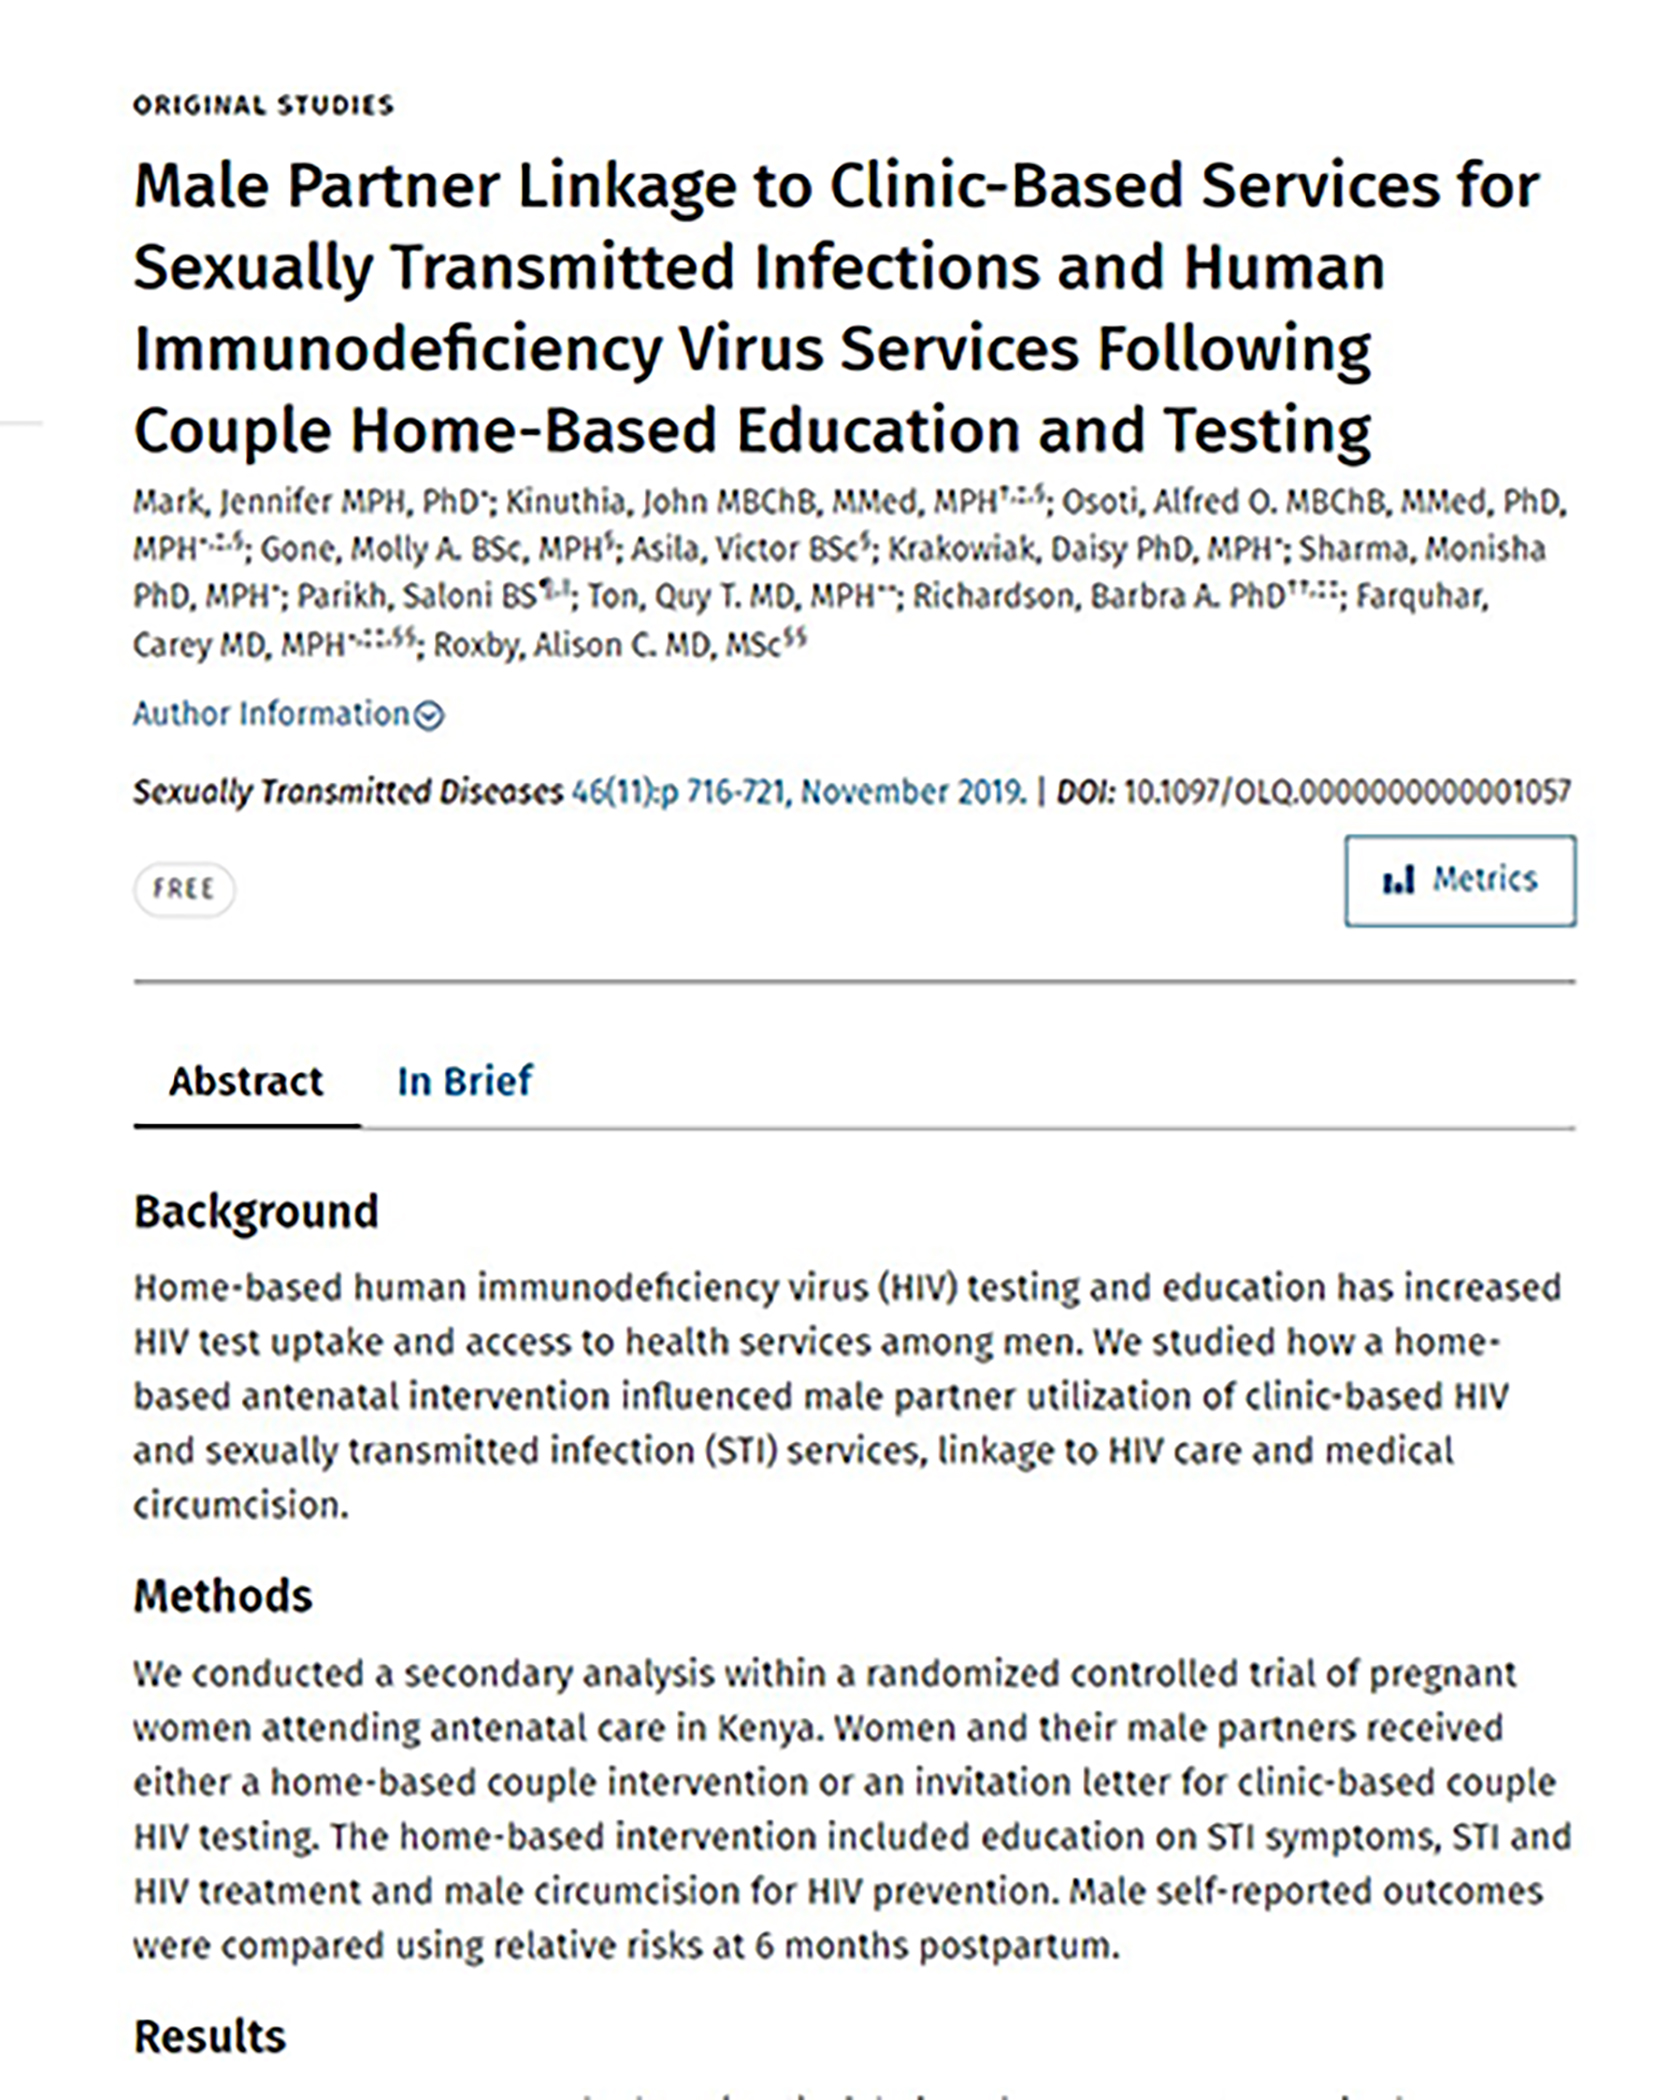 Ligação do parceiro masculino a serviços clínicos para infecções sexualmente transmissíveis e VIH - cobertura